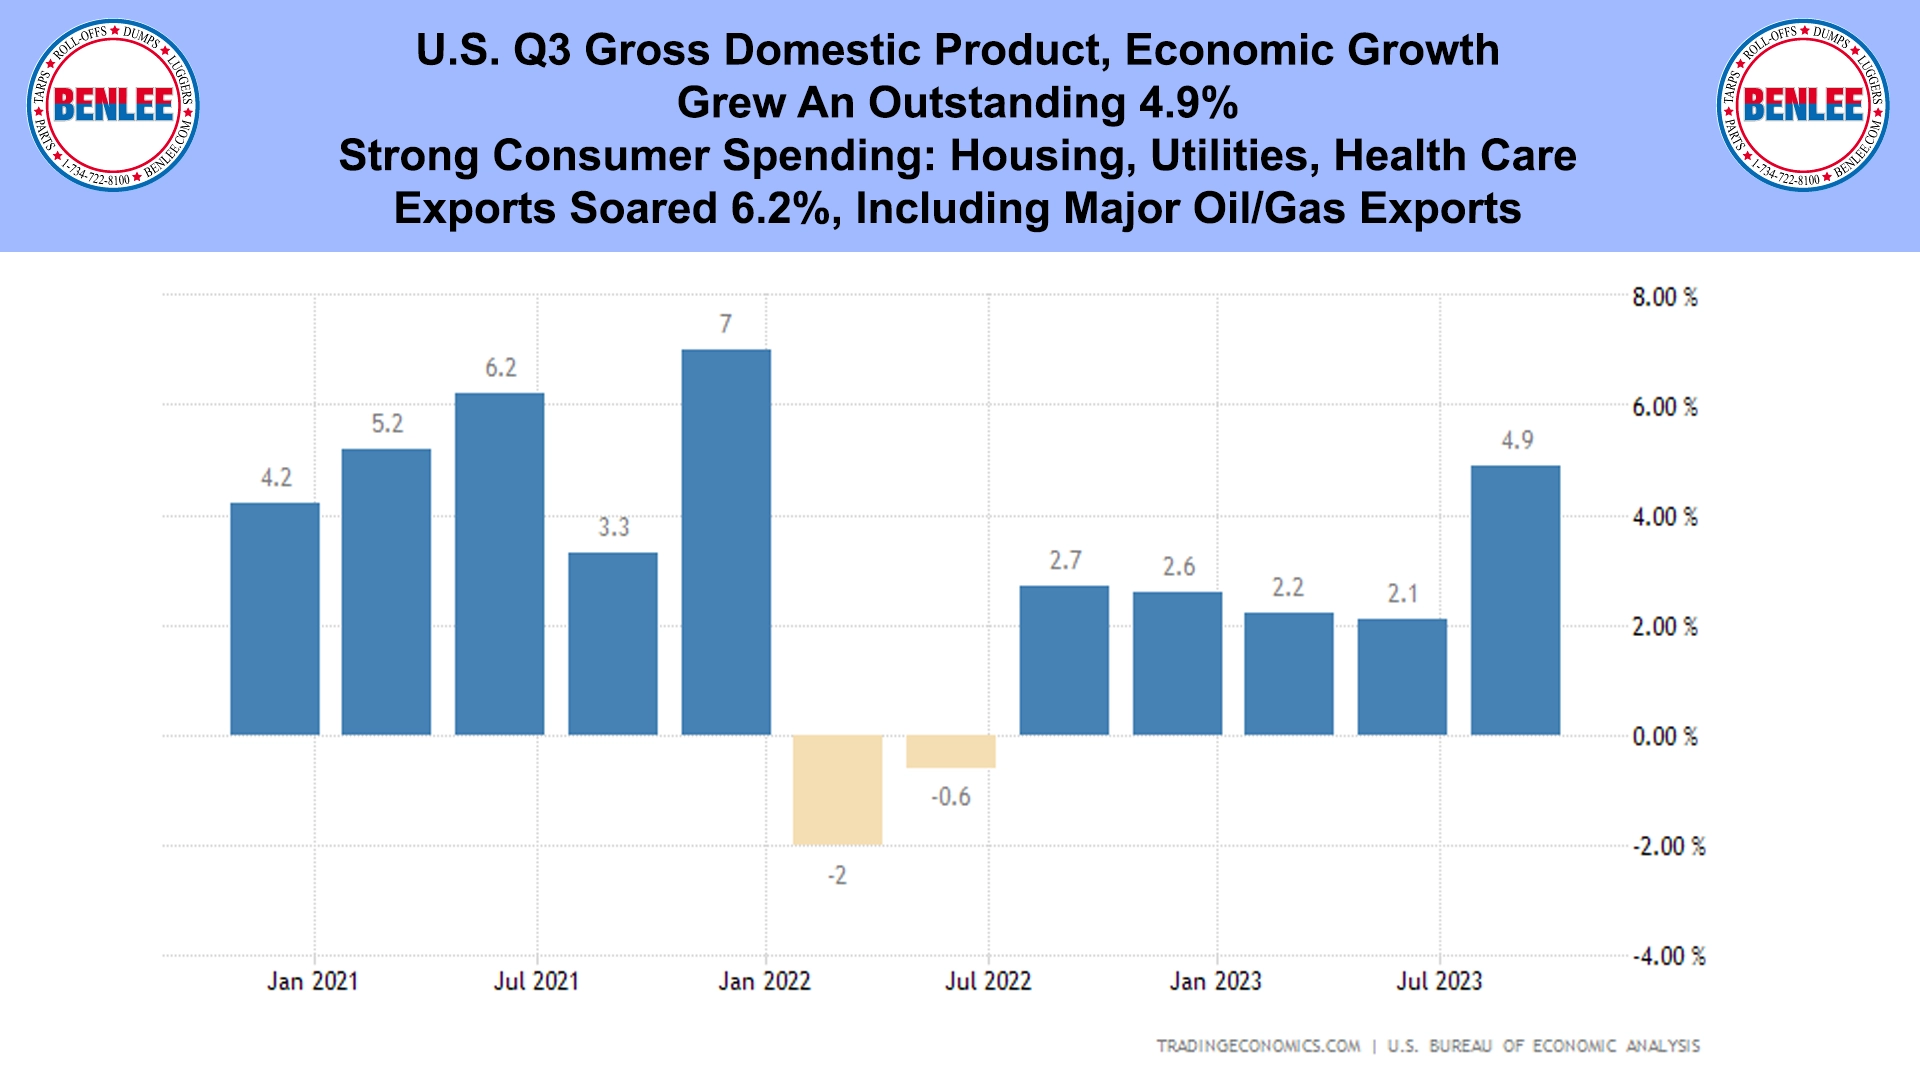 U.S. Q3 Gross Domestic Product